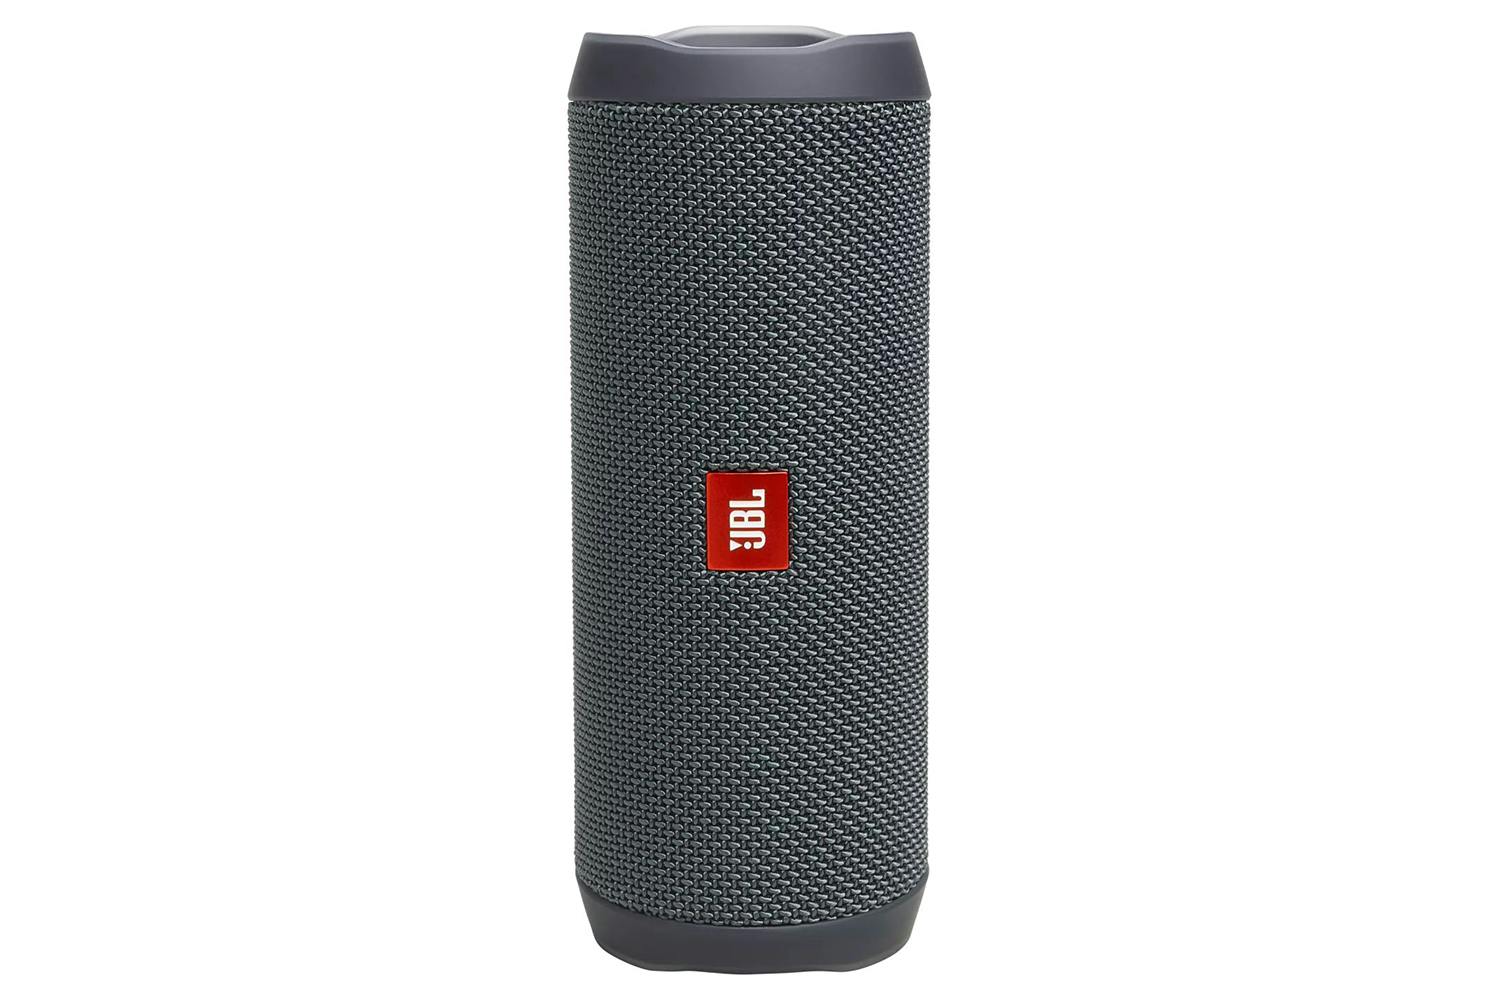 Handbag Wireless Bluetooth Speaker LED Outdoor Karaoke Speaker Support –  ALLINONEWIRE